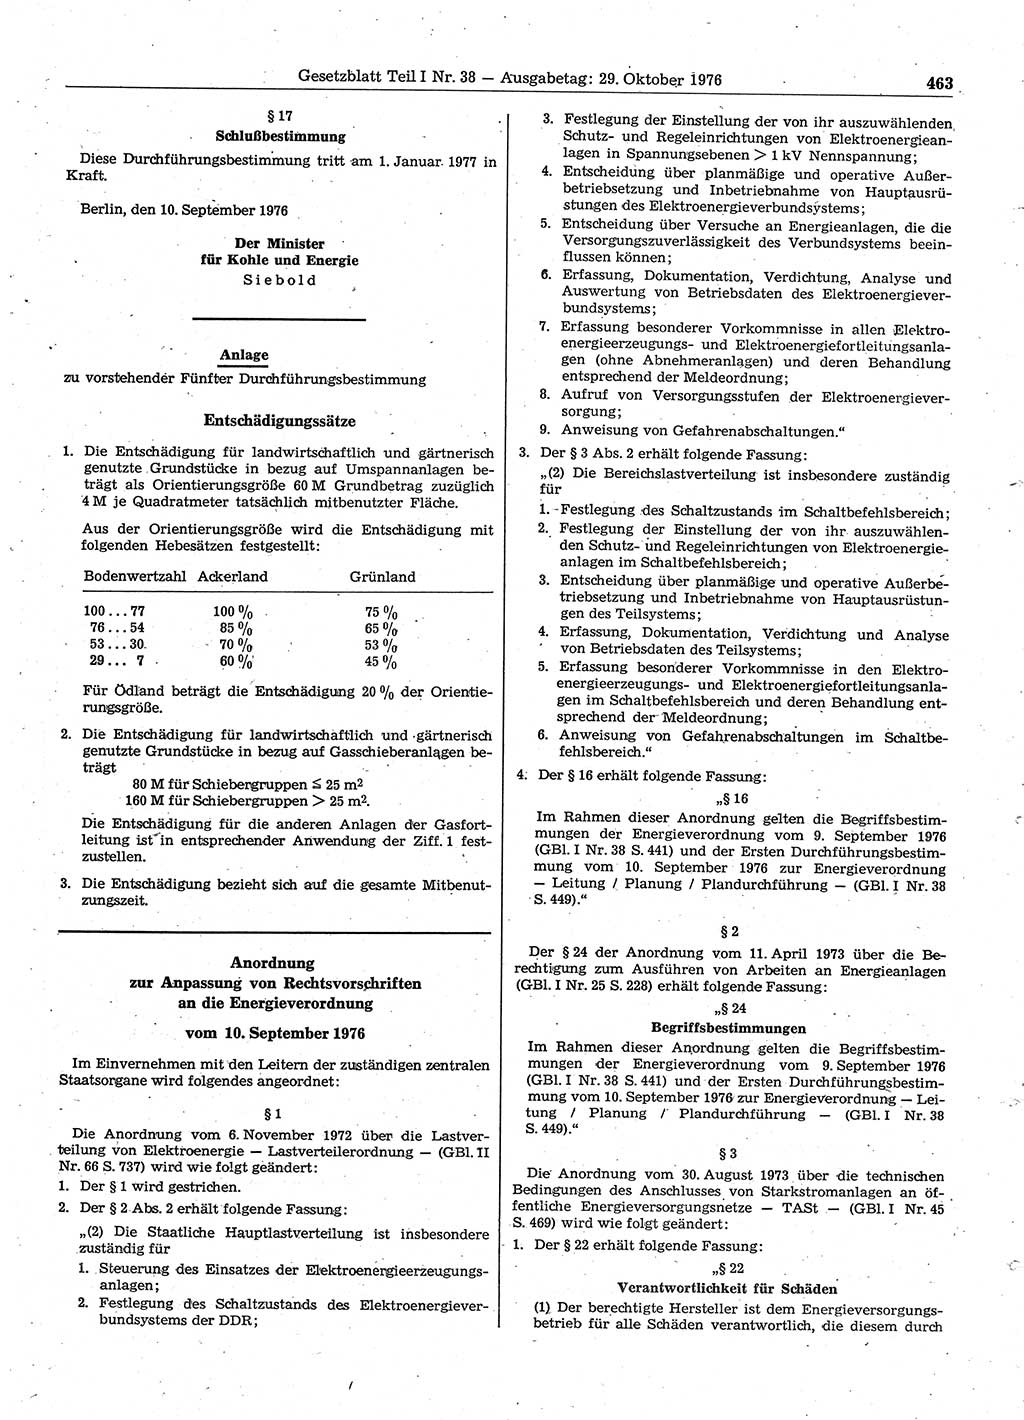 Gesetzblatt (GBl.) der Deutschen Demokratischen Republik (DDR) Teil Ⅰ 1976, Seite 463 (GBl. DDR Ⅰ 1976, S. 463)